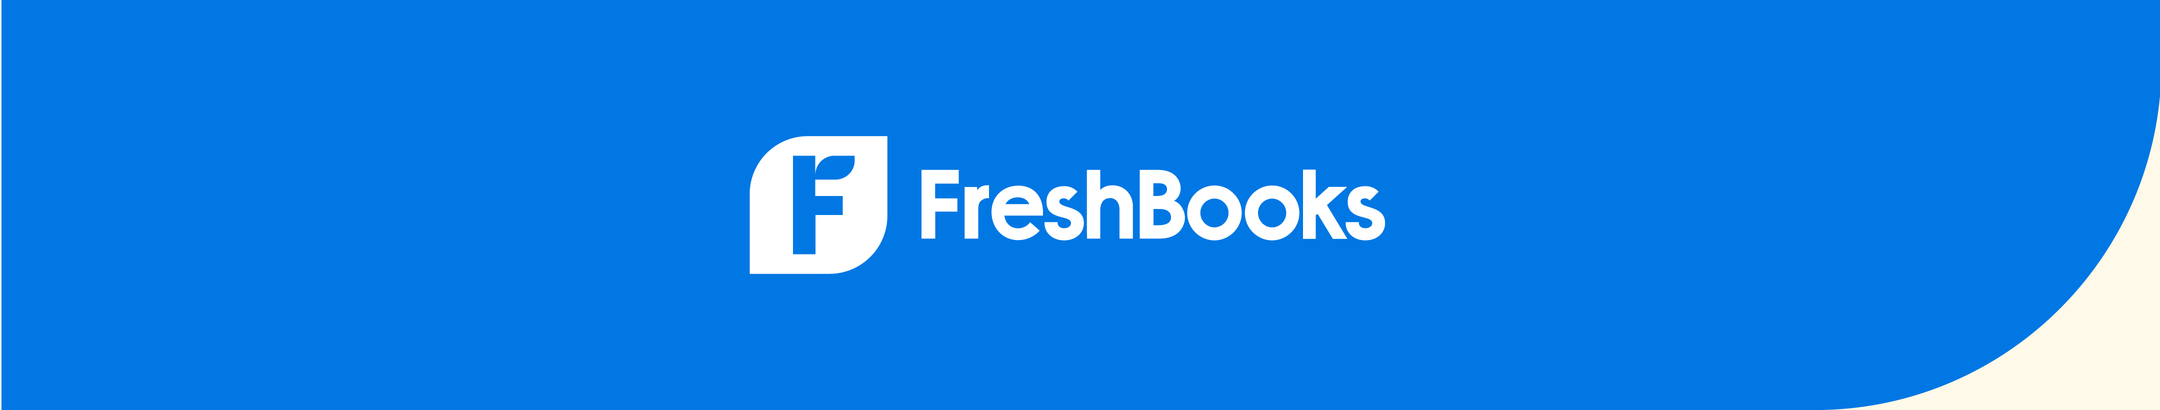 FreshBooks Listing Banner